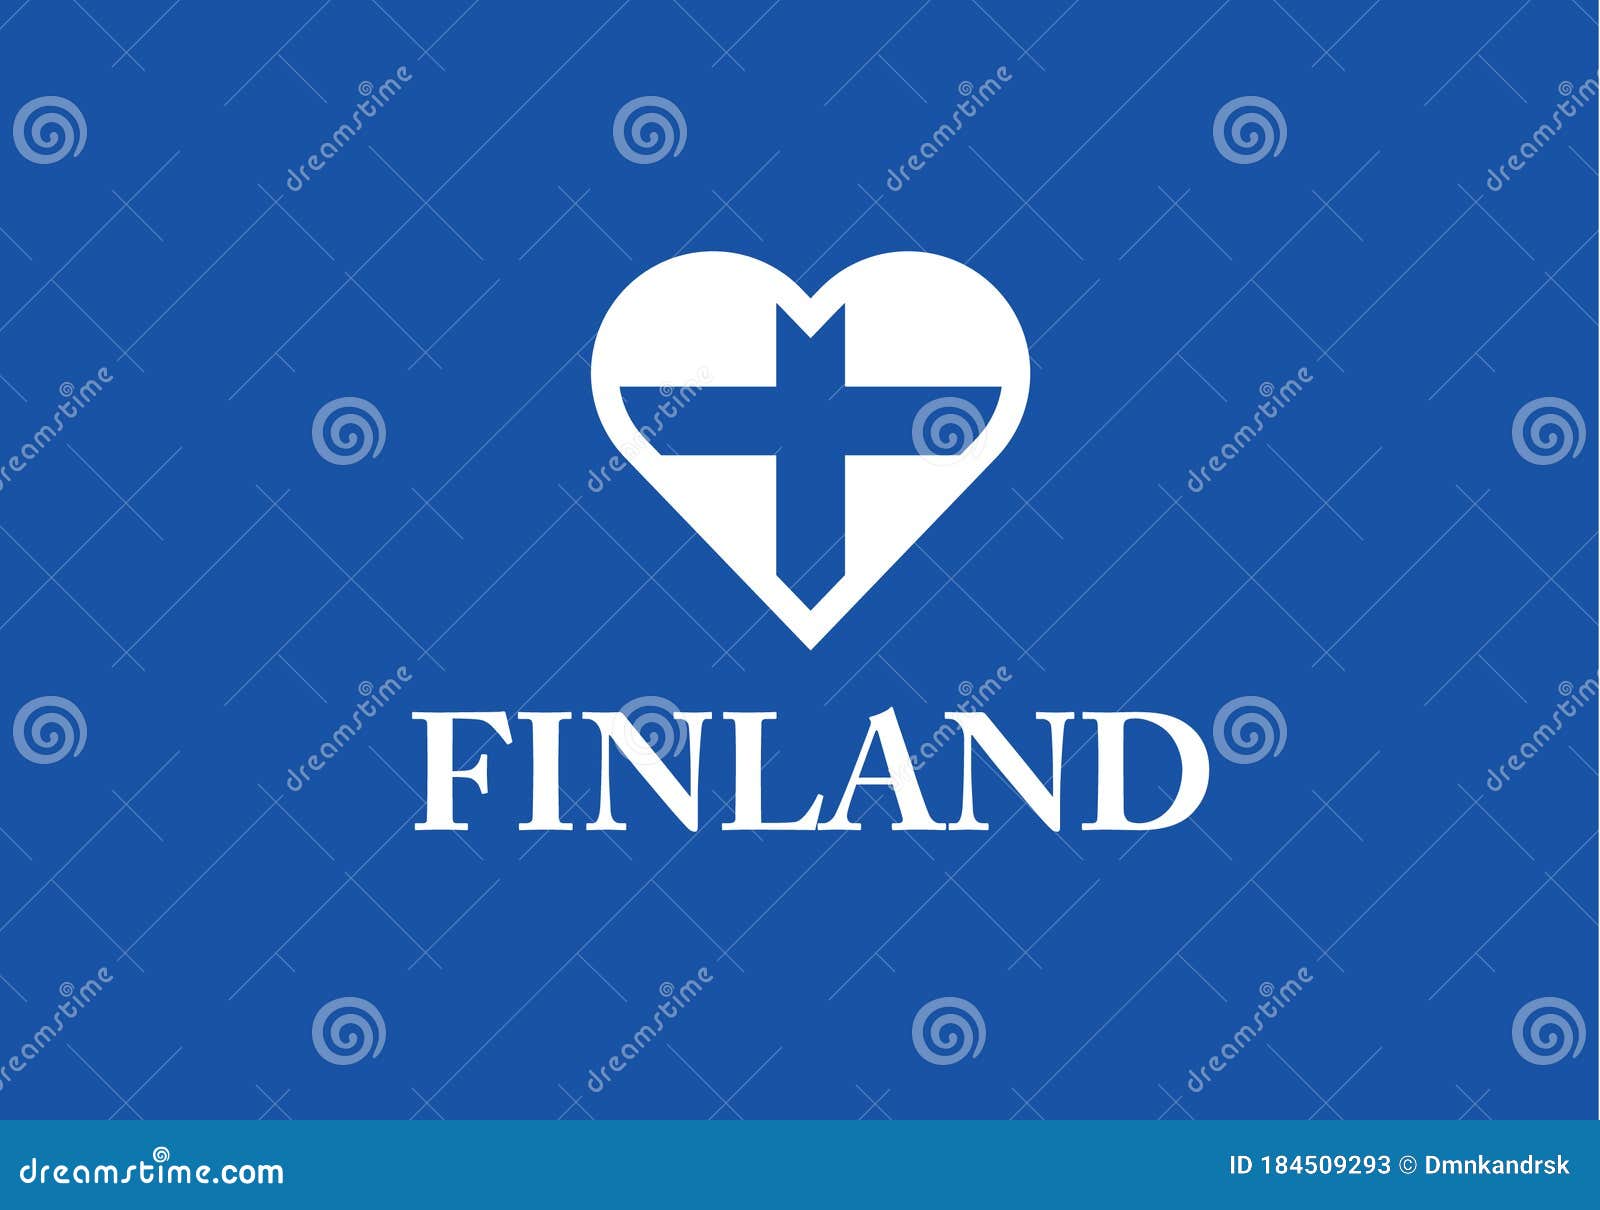 芬兰标志 库存图片. 图片 包括有 国家, 象征性, 北欧人, 安排, 交叉, 欧洲, 旅游业, 芬兰语 - 50551099